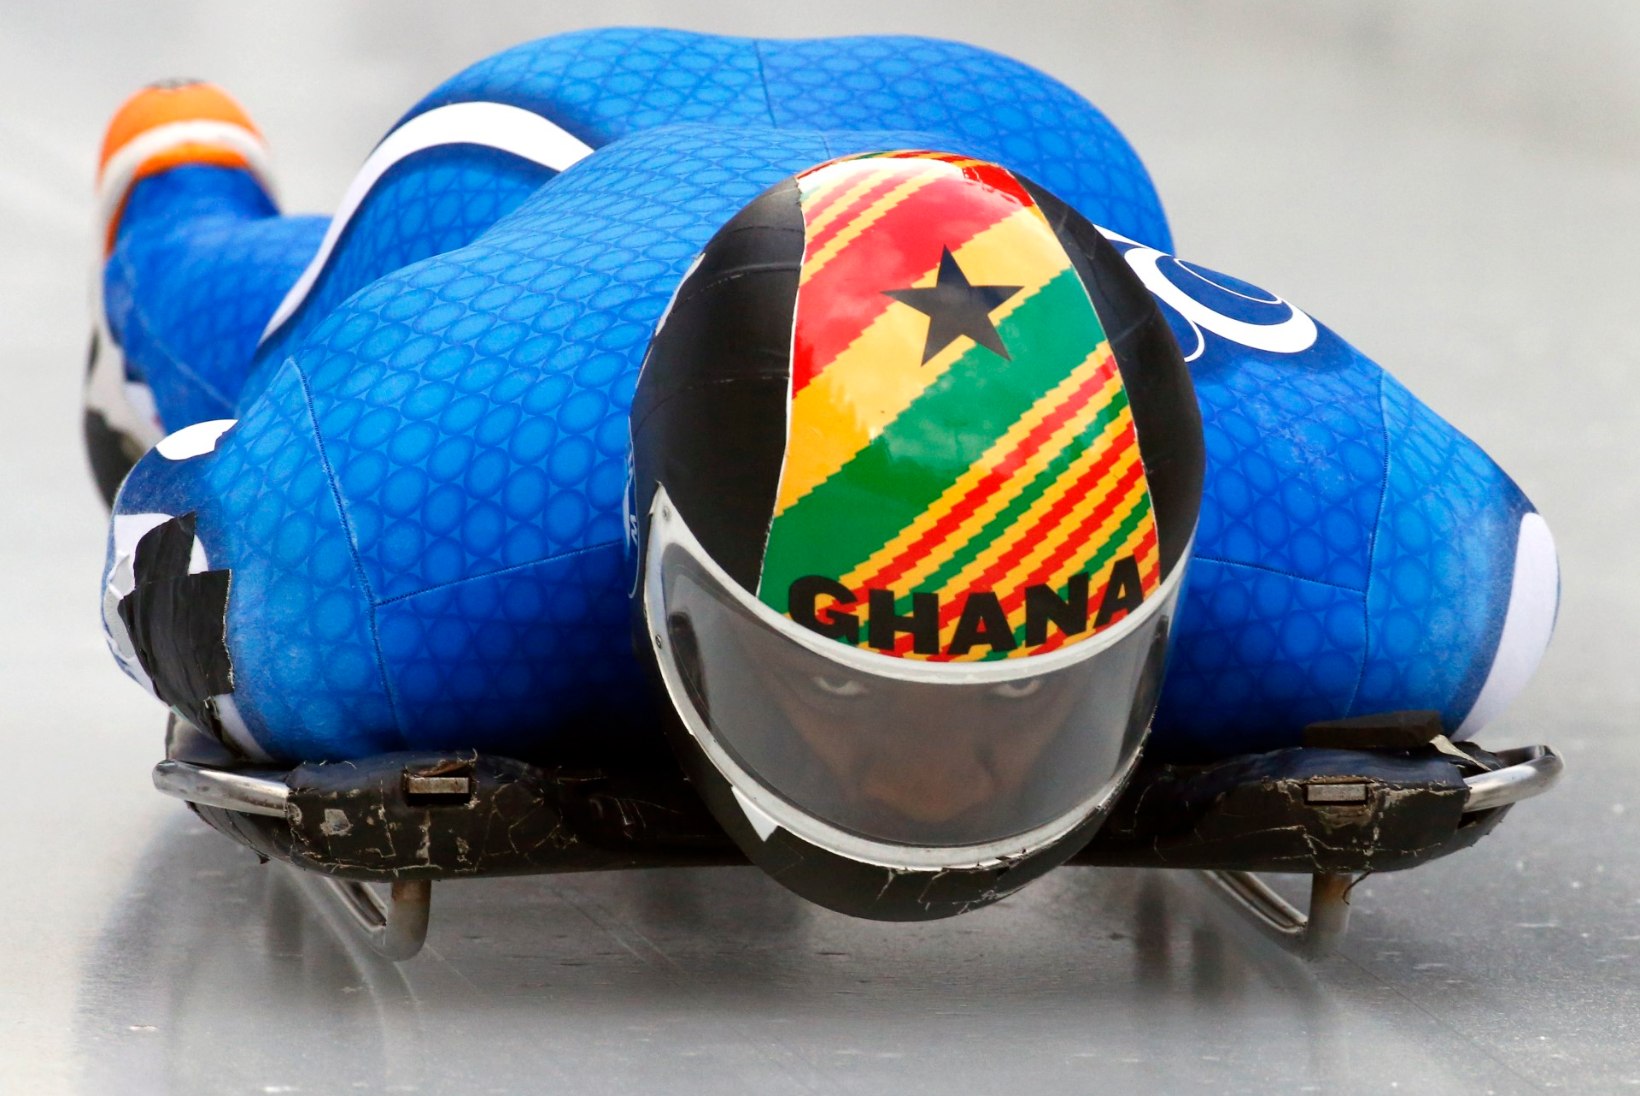 LUMELE! Nigeeria ja Ghana sportlased lendavad taliolümpiale ajalugu tegema 